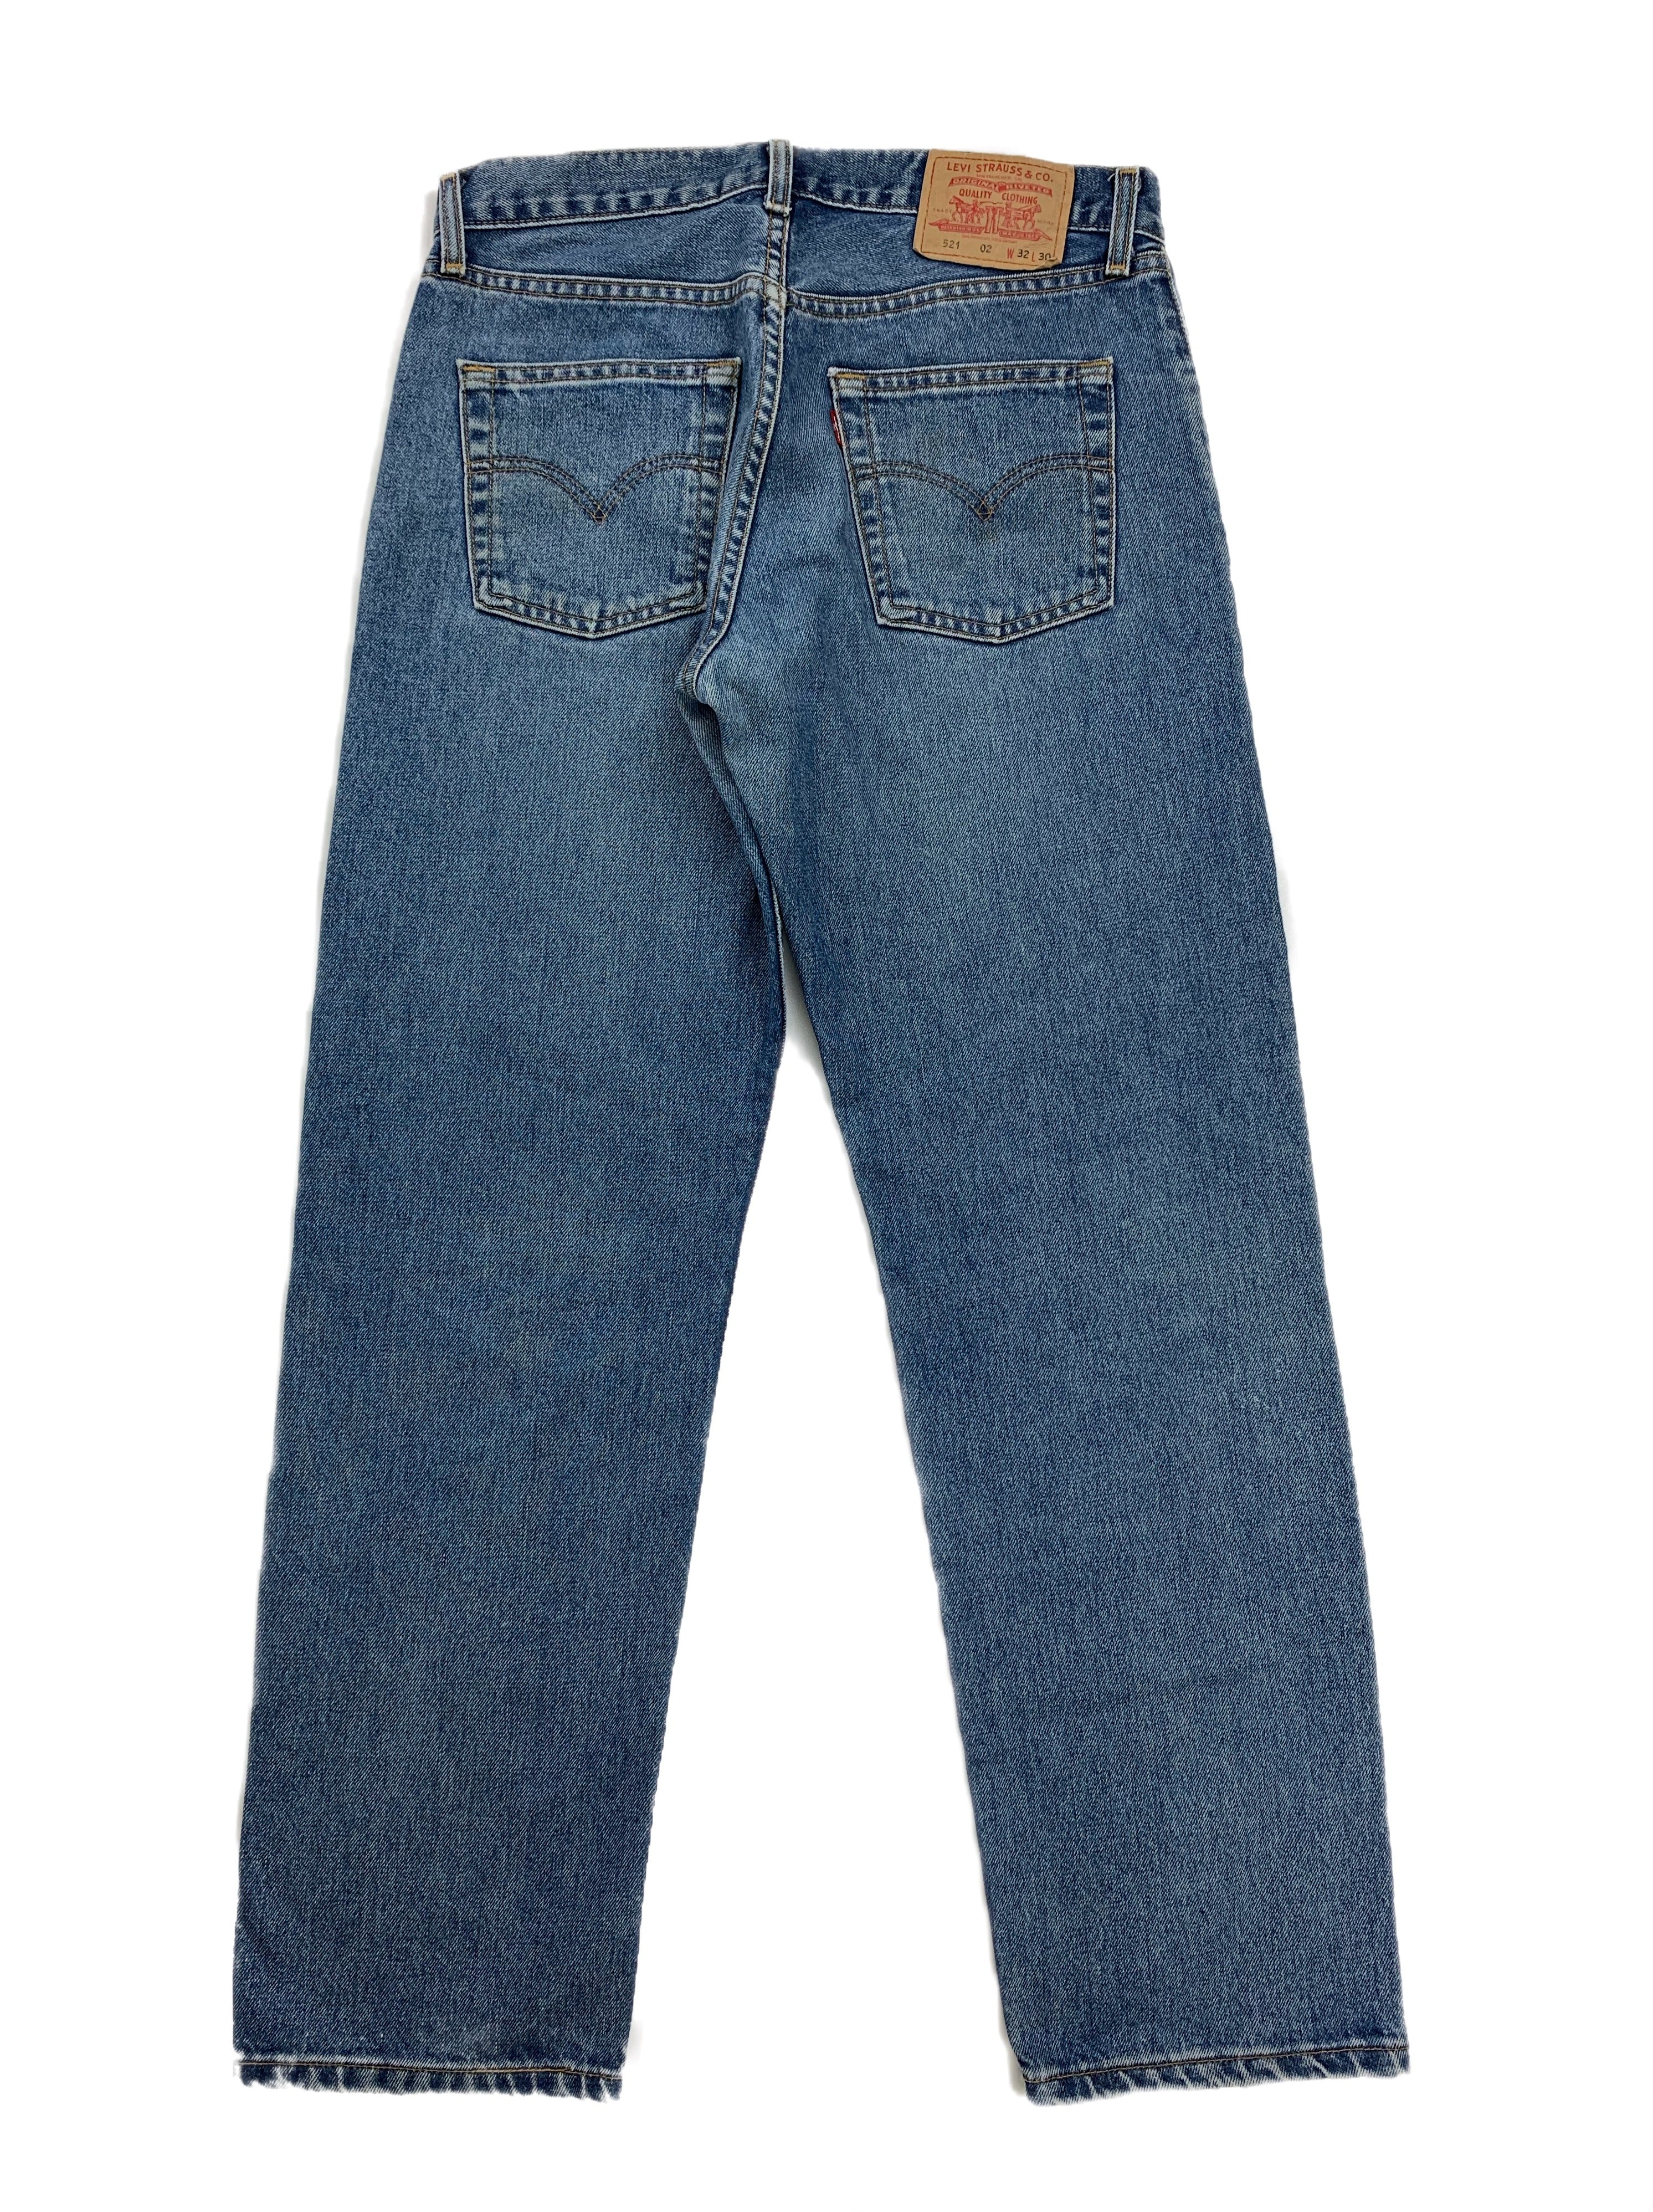 Rare Vintage Levi's 521 Jeans | Restorecph